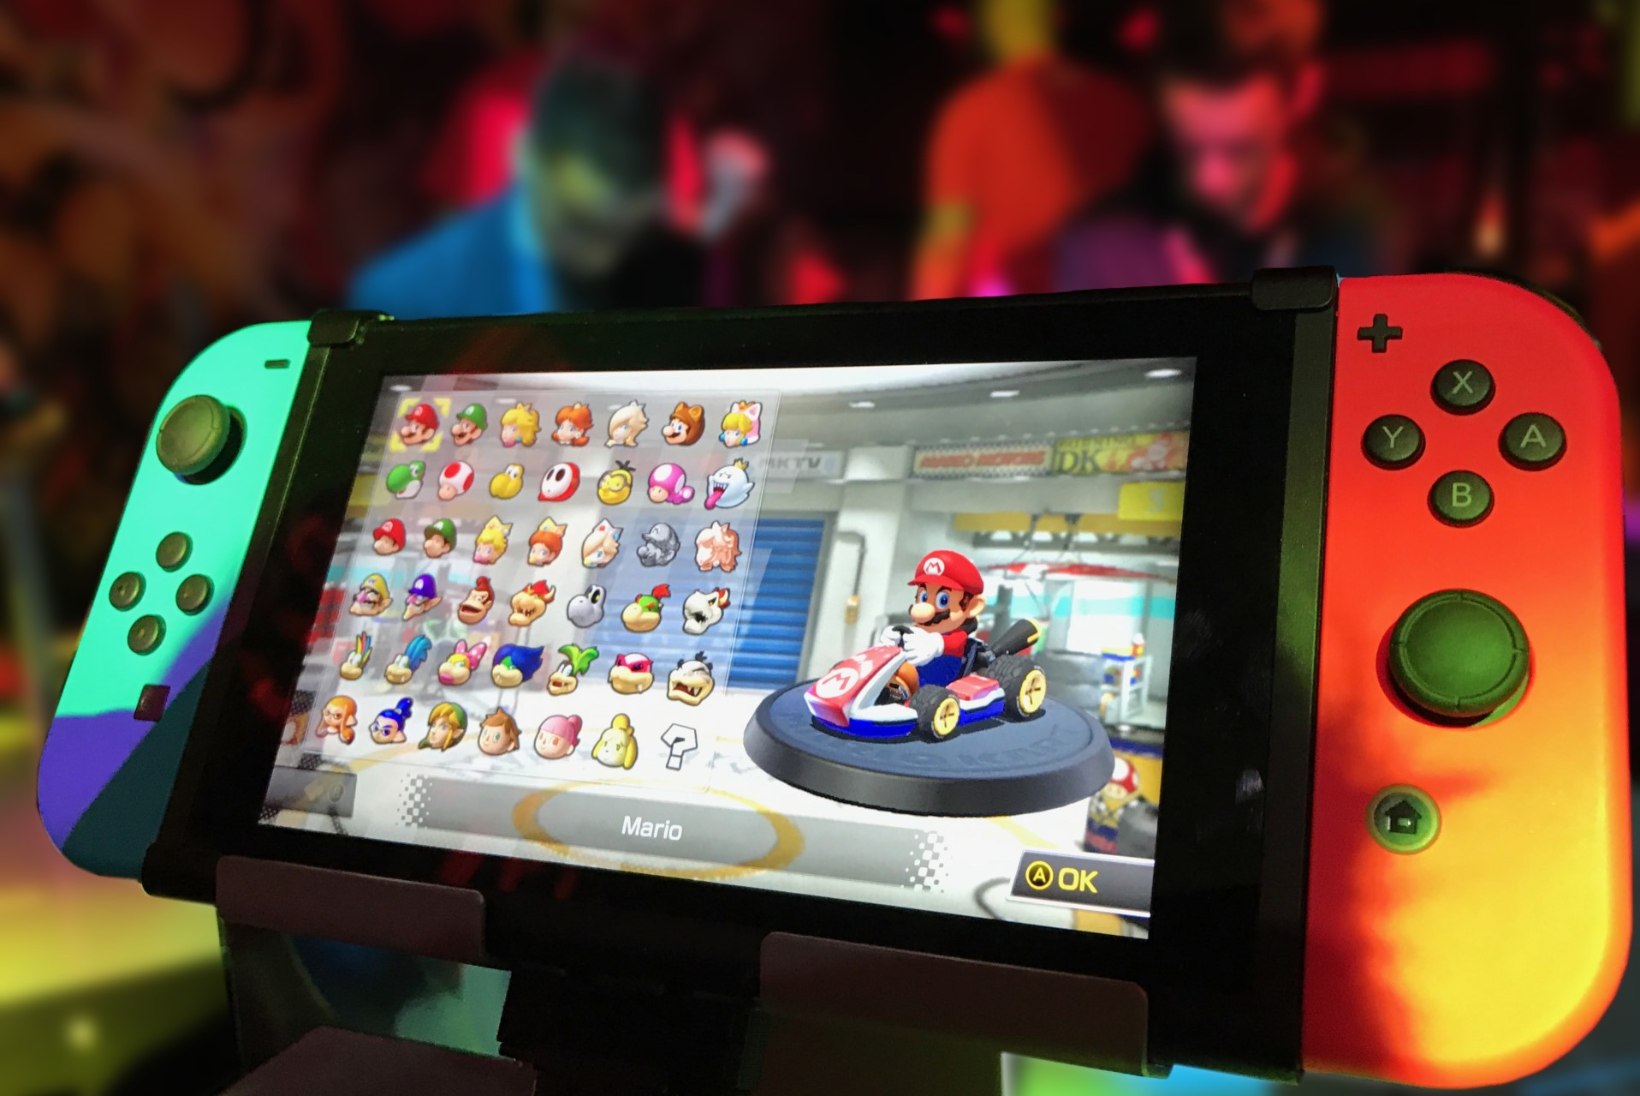 SUURUSEHULLUSTUS? Nintendo toob turule veel kaks Nintendo Switch konsooli